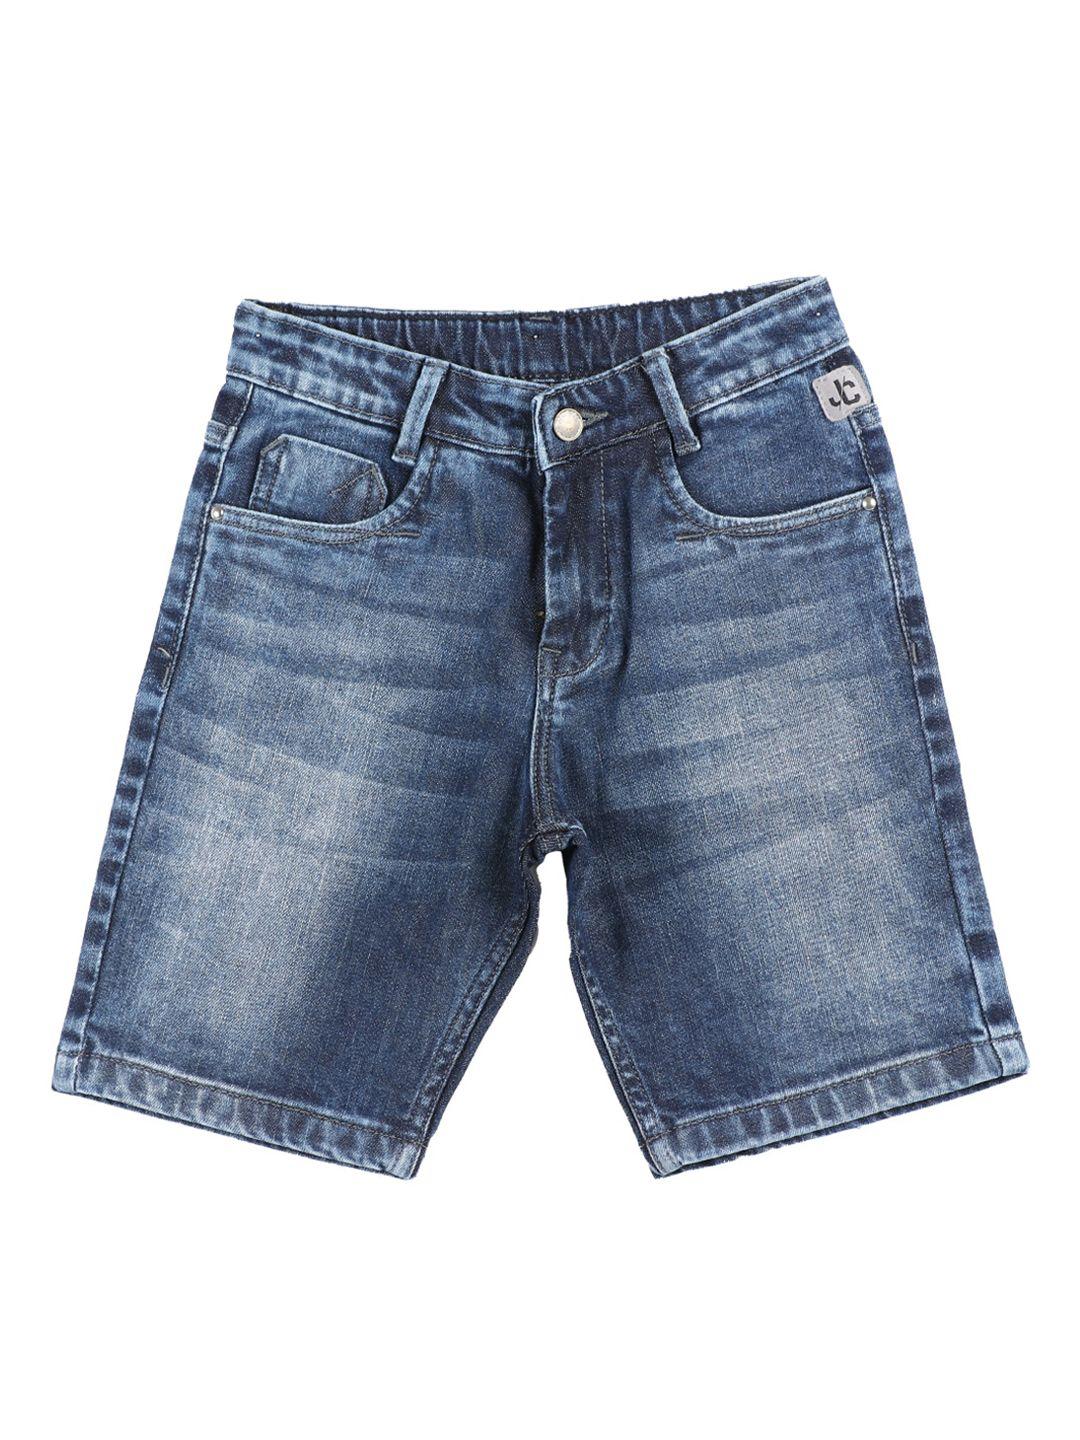 jean-cafe-boys-blue-washed-slim-fit-denim-shorts